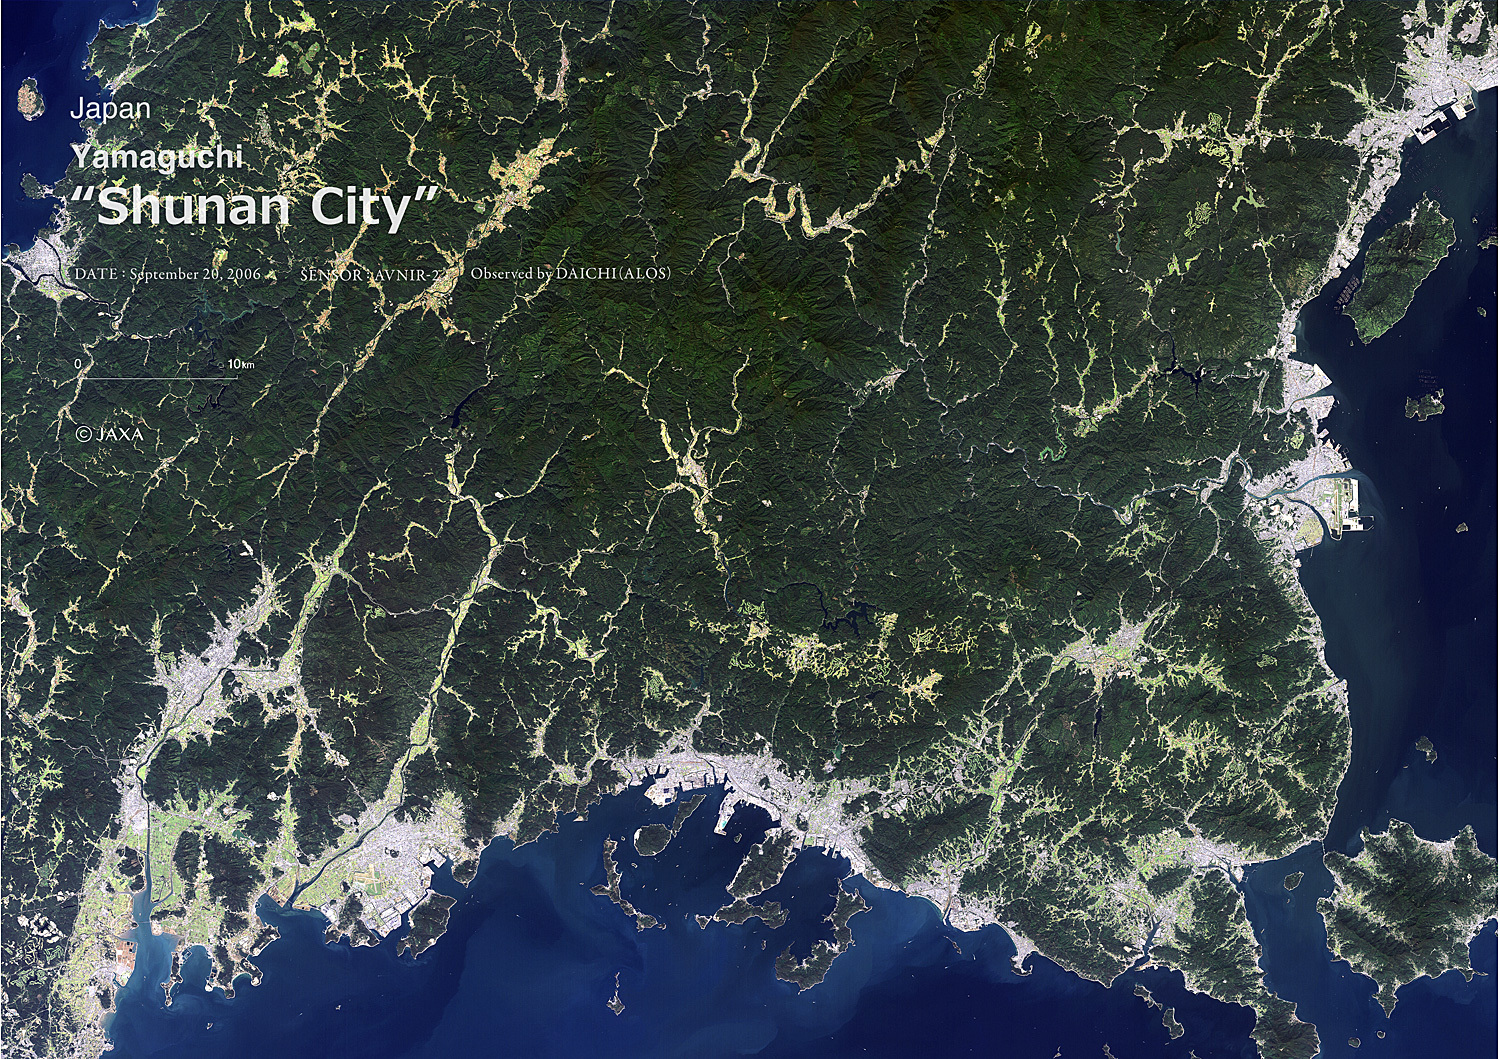 だいちから見た日本の都市 周南市:衛星画像（ポスター仕上げ）